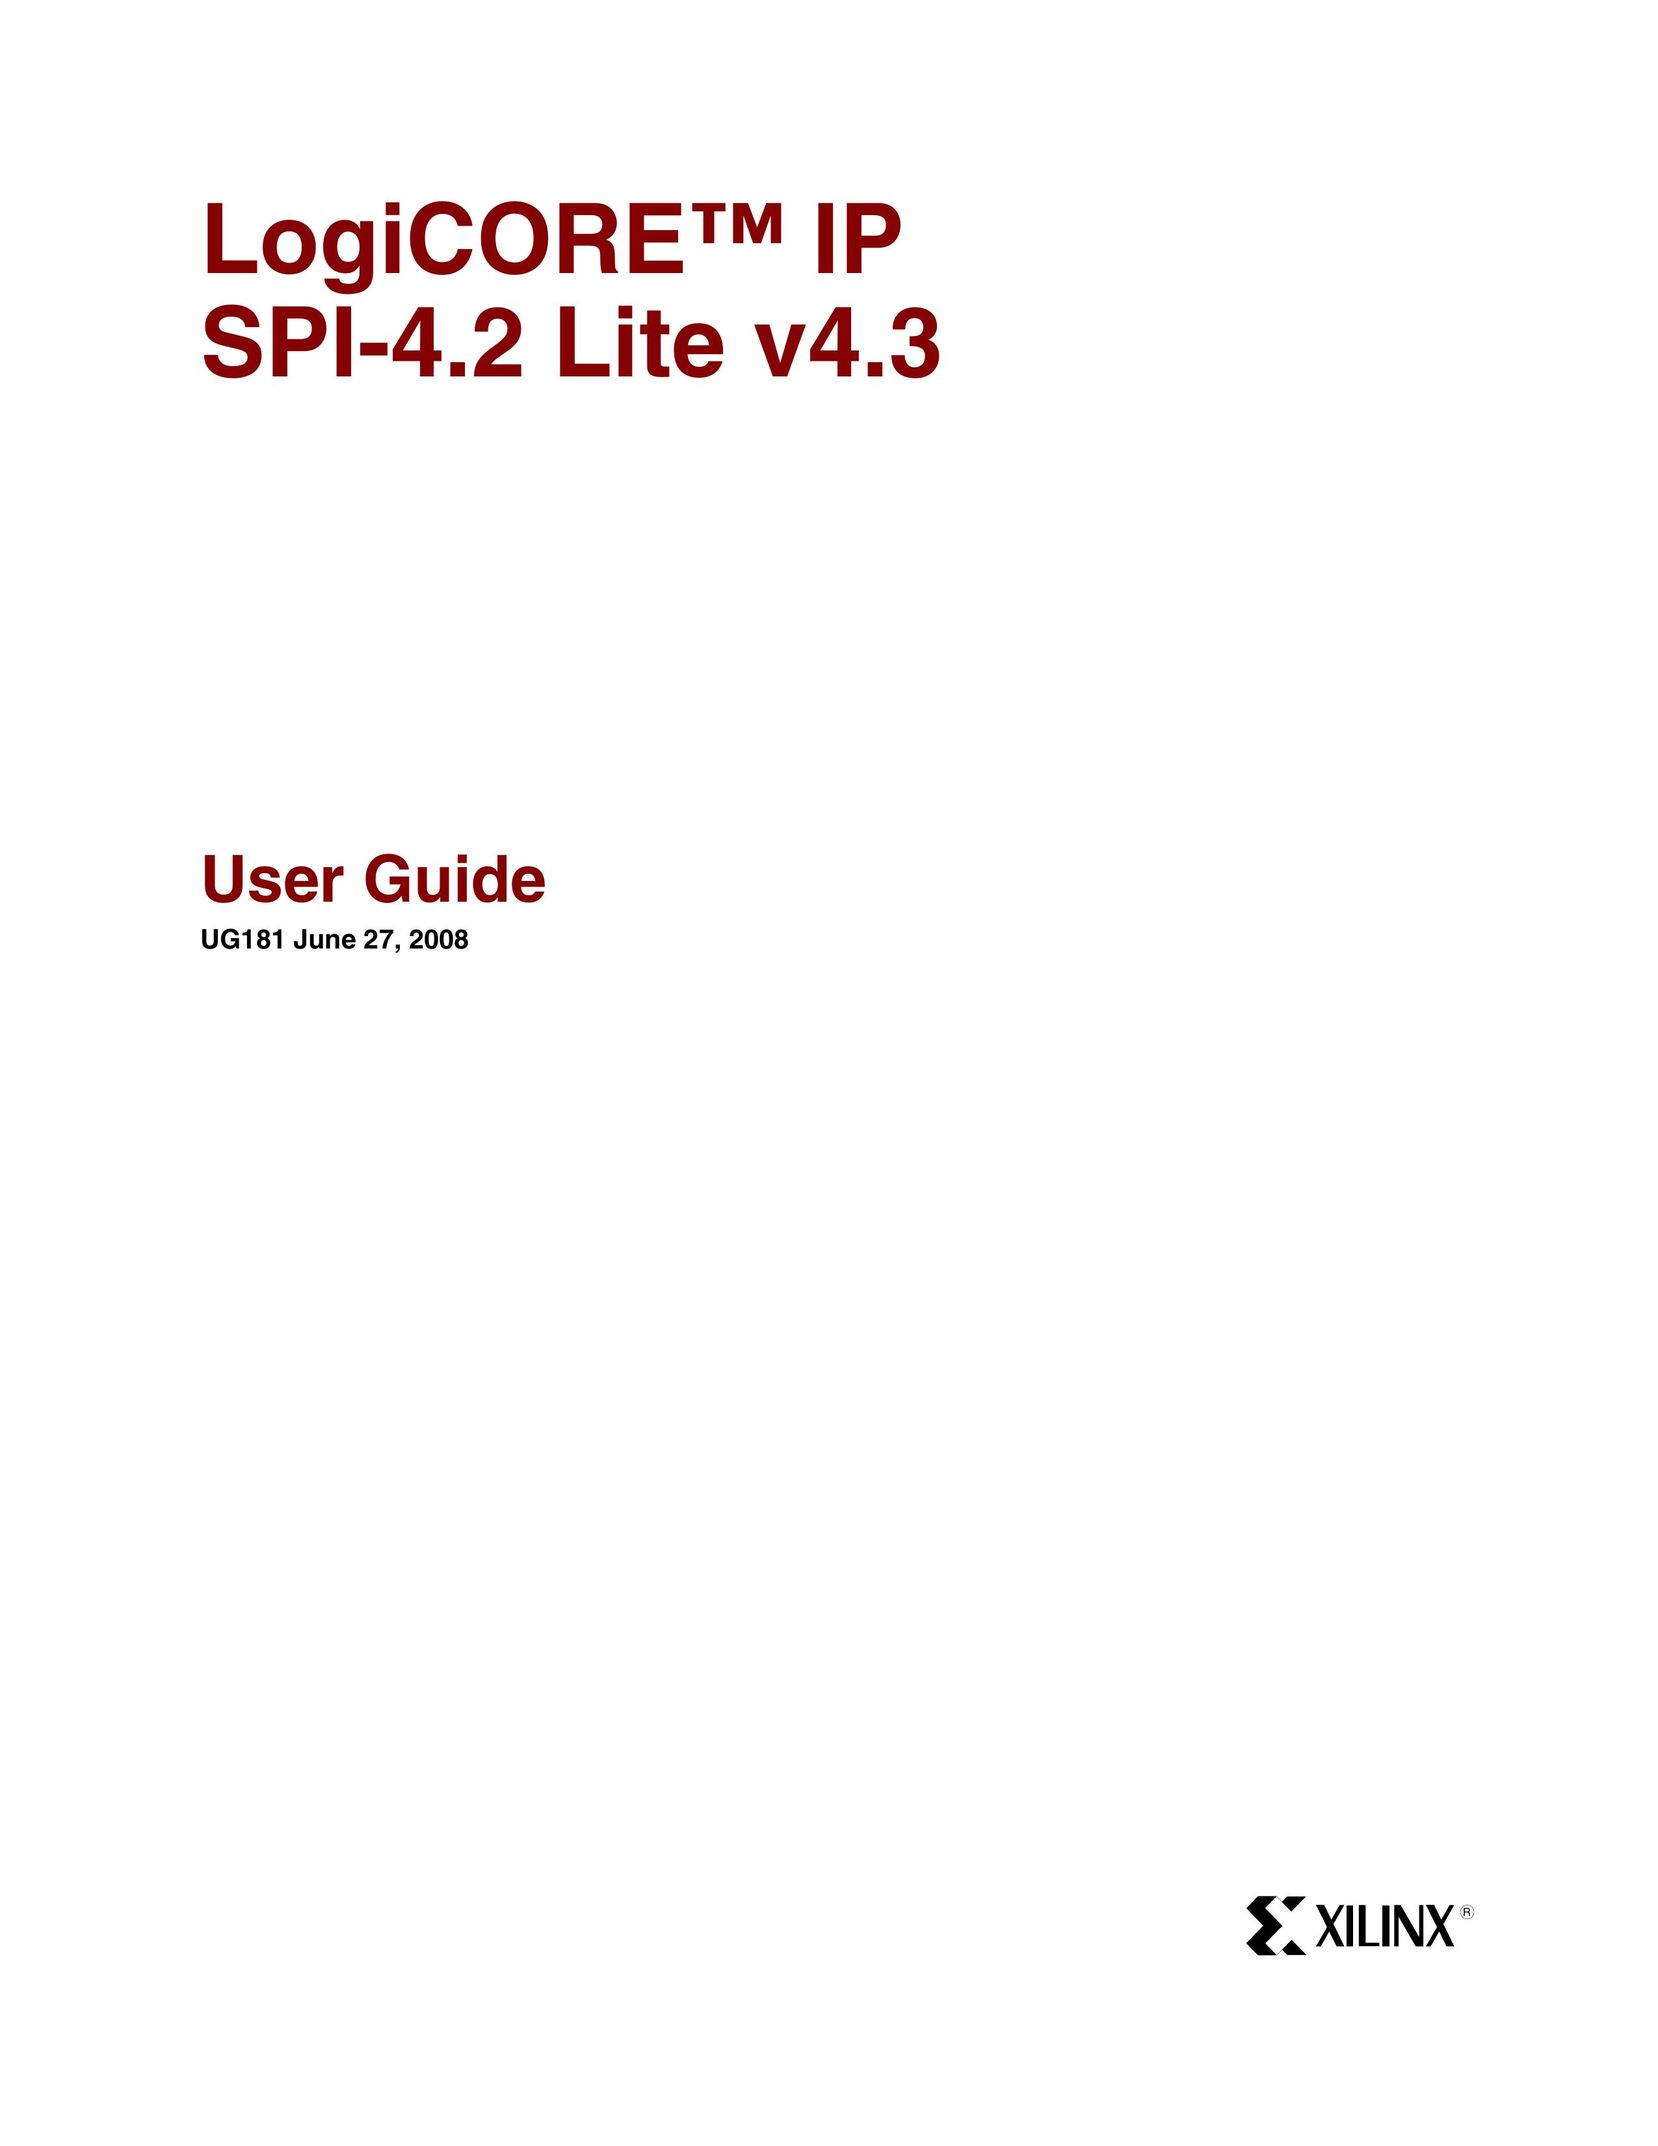 Xilinx UG181 Welder User Manual